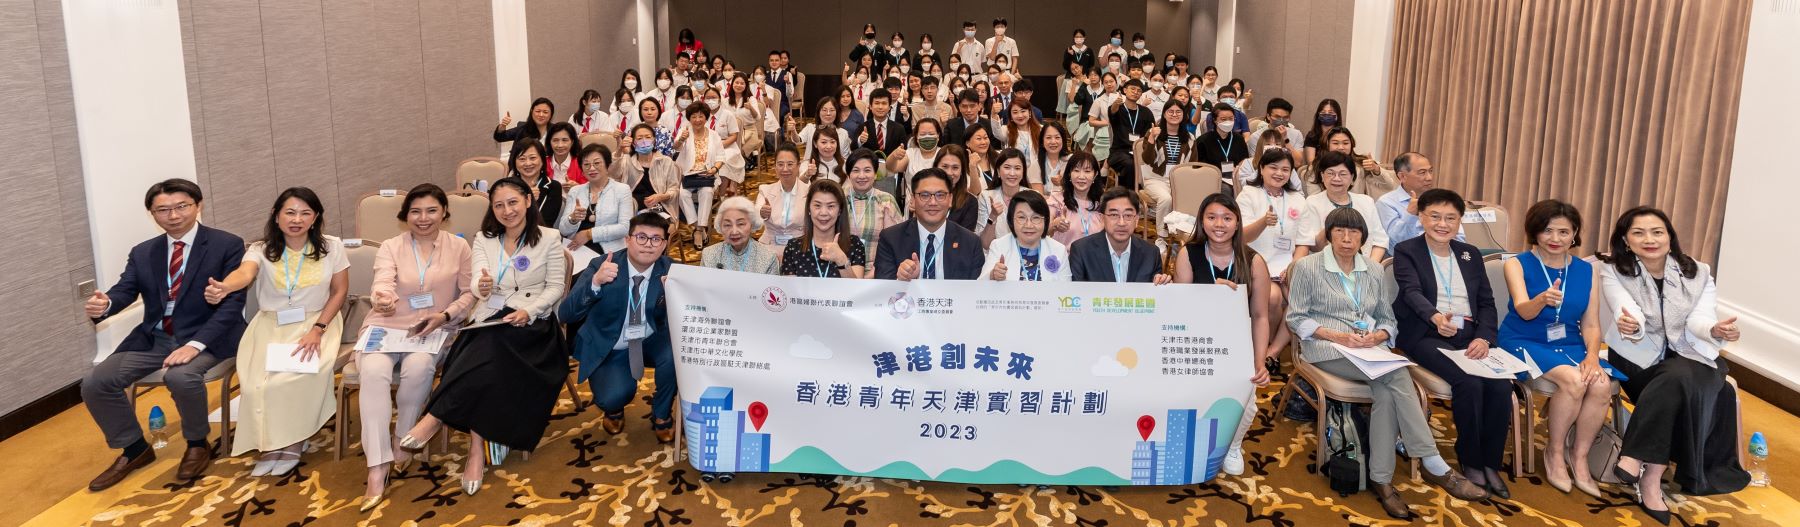 「津港創未來─香港青年天津實習計劃2023」啟動